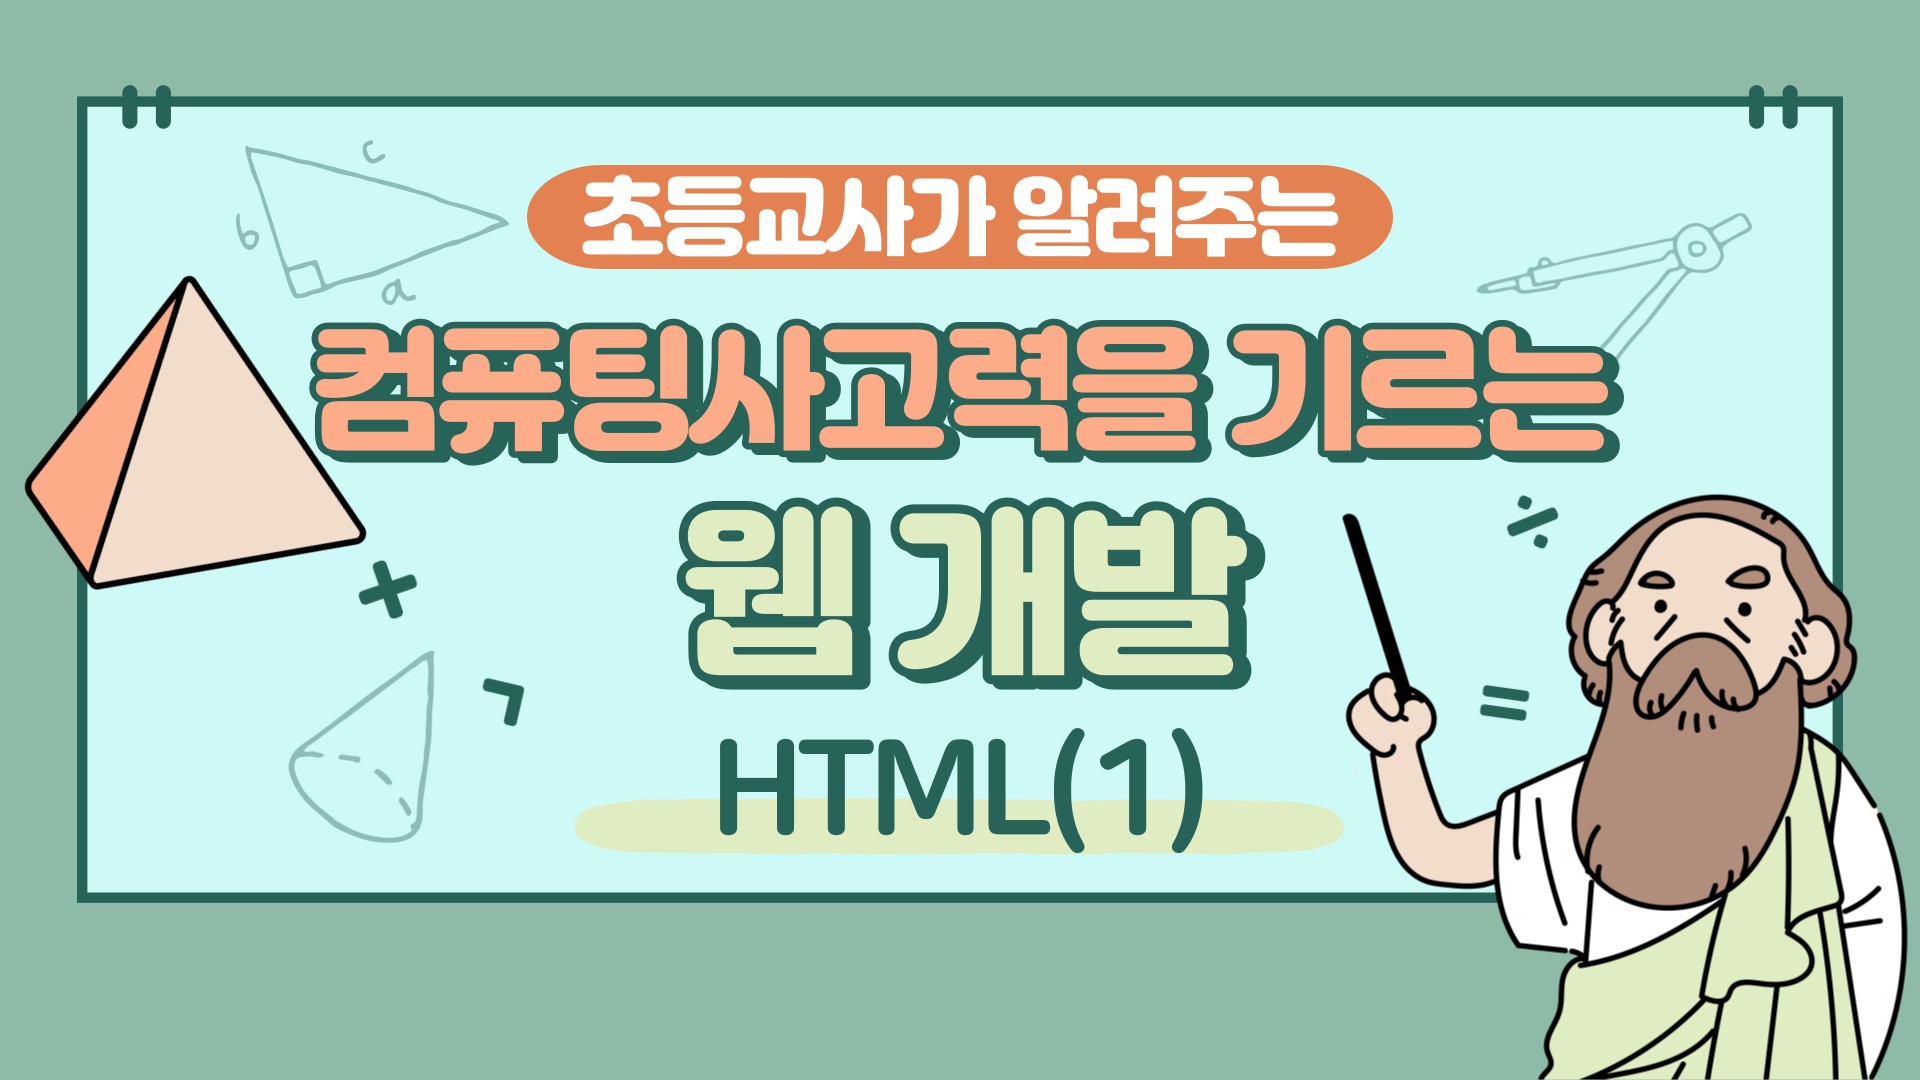 컴퓨팅사고력을 기르는 웹 개발(HTML) Step.1 (2기)